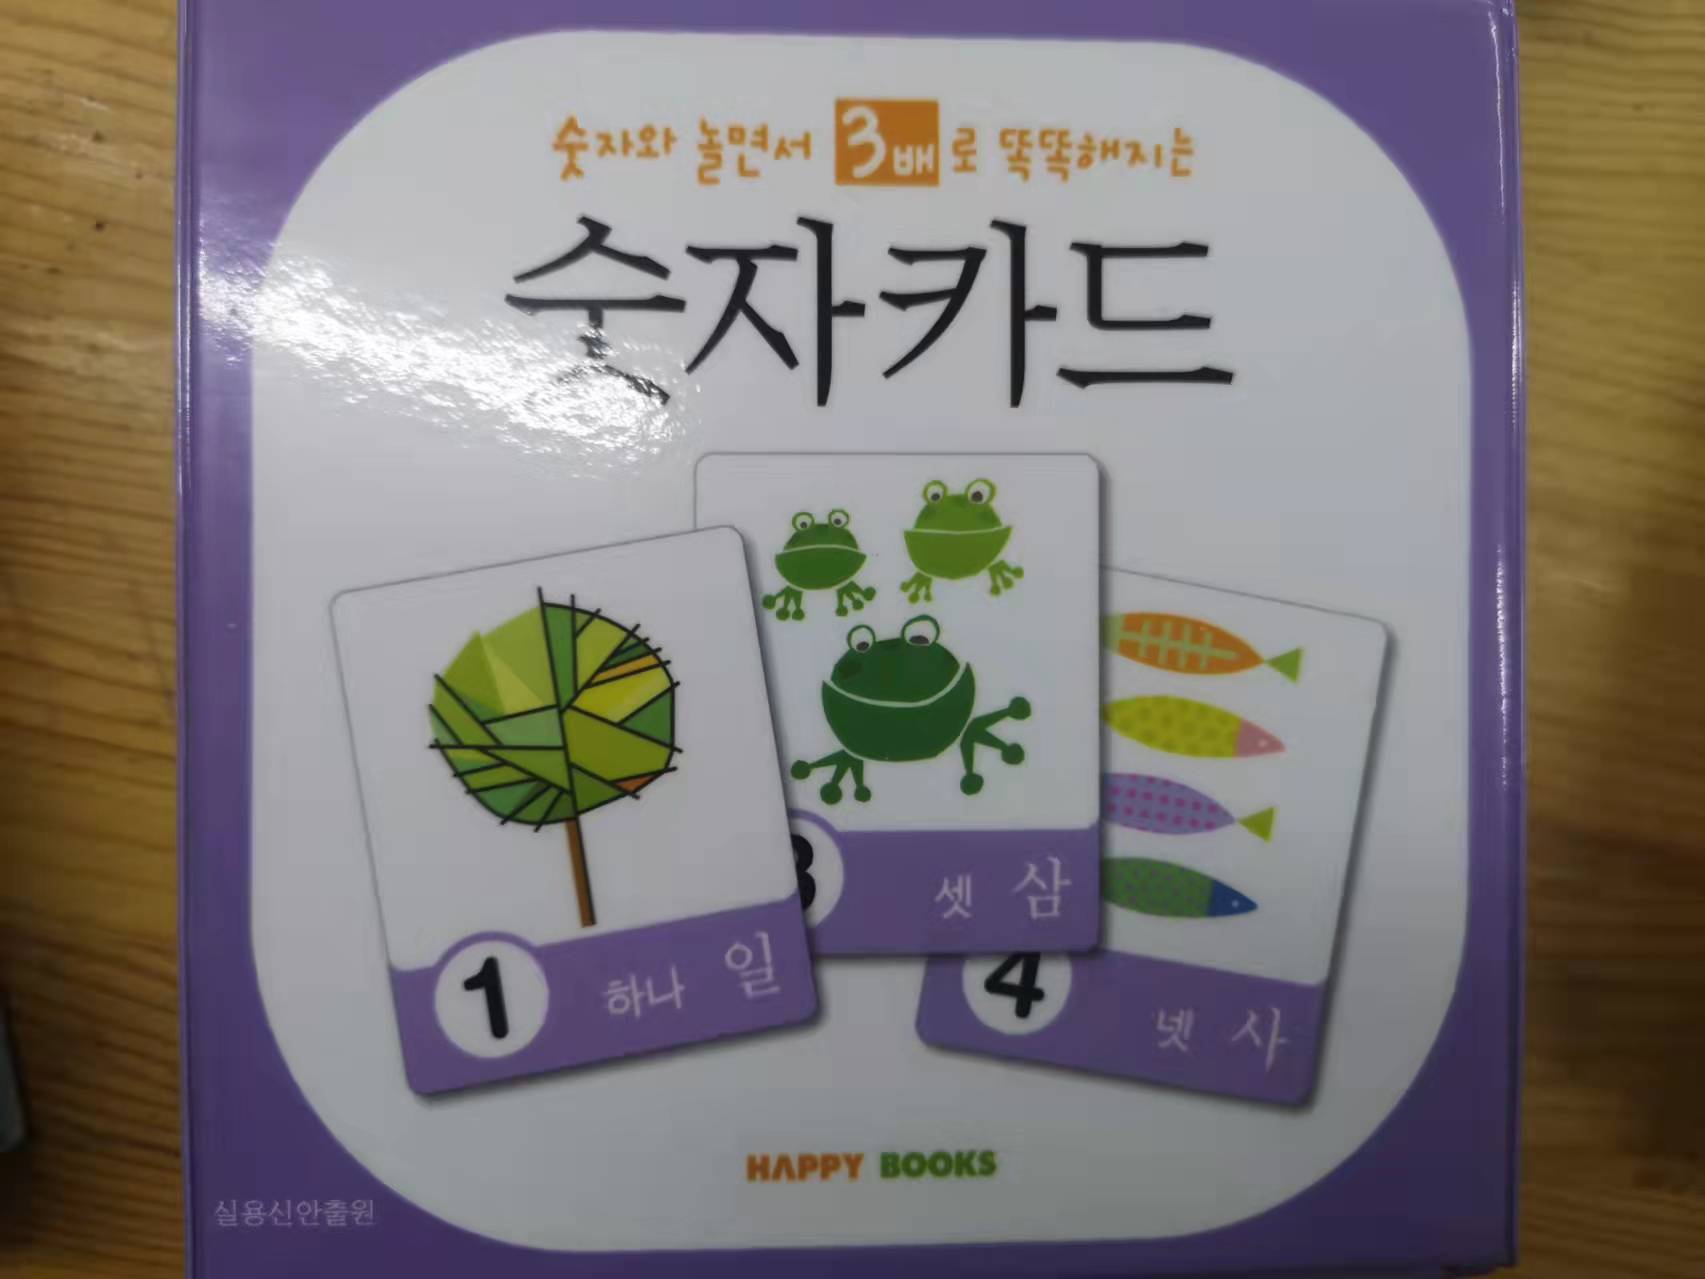 韩国语数字卡/朝鲜文幼儿单词学习/早教/益智/卡片玩具